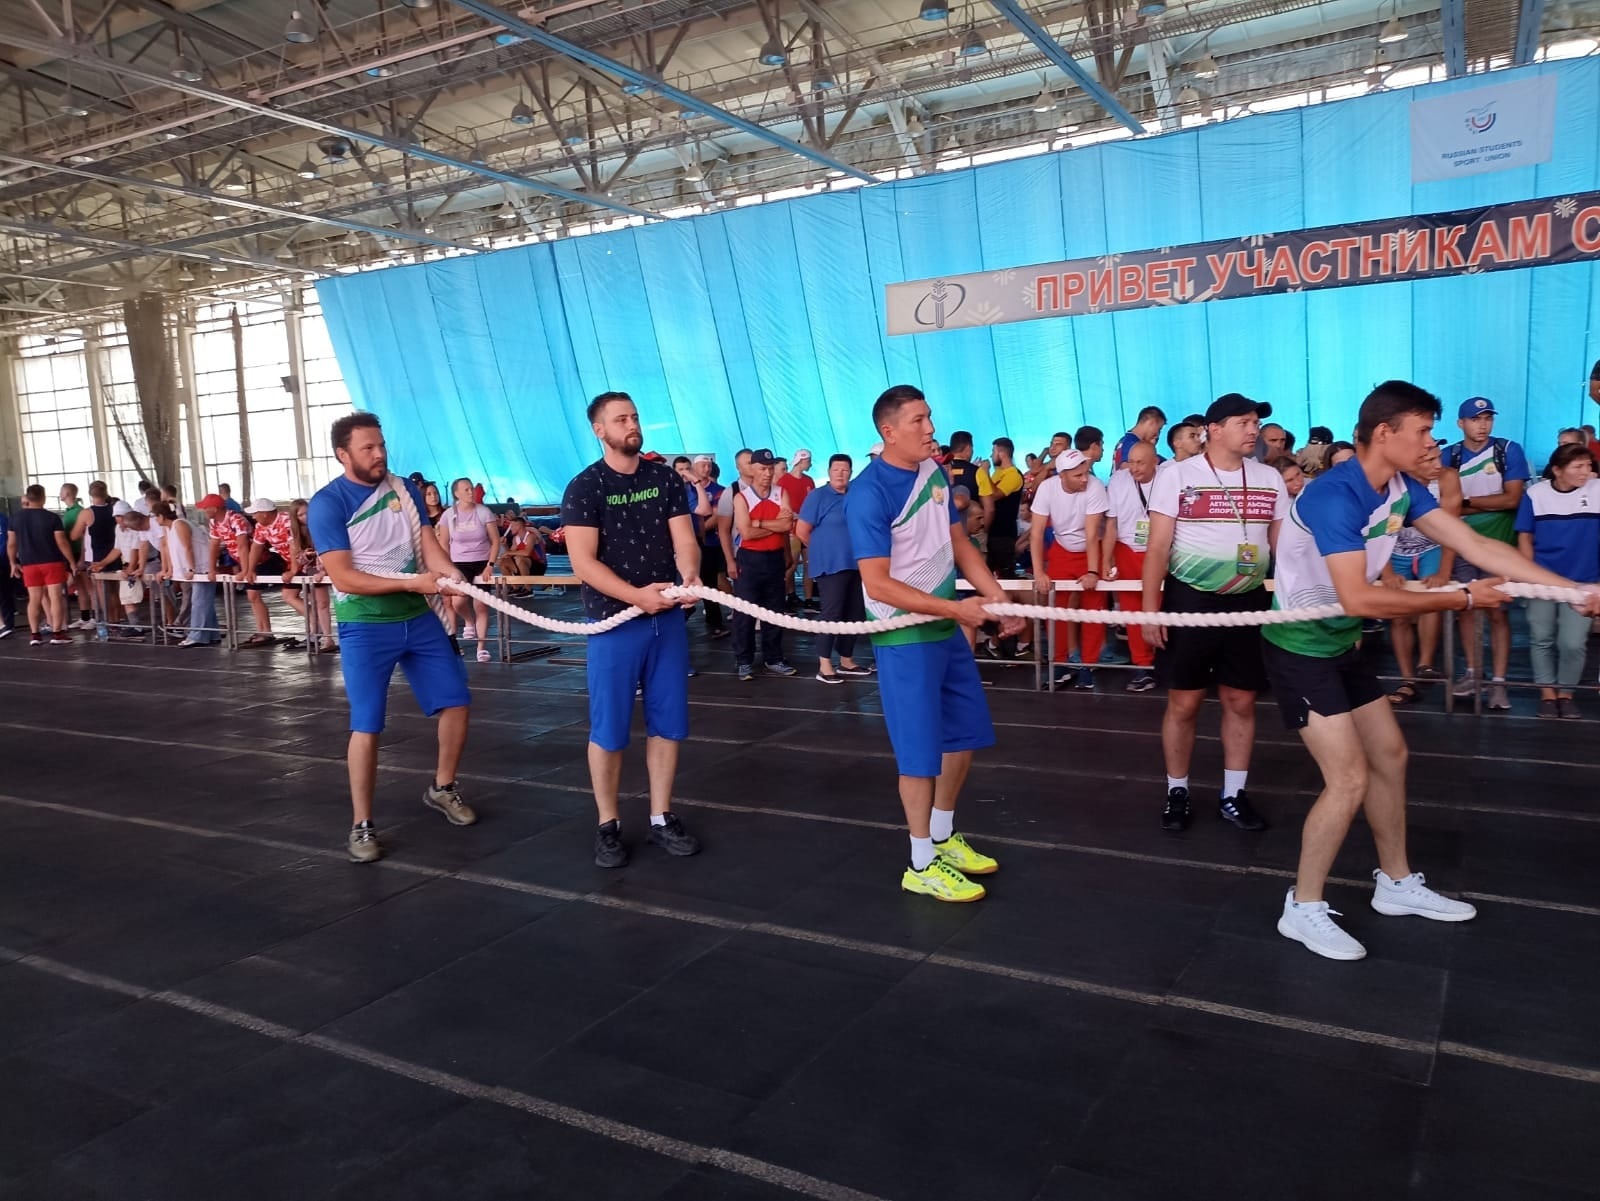 Команда Башкирии показала достойный результат в XIII Всероссийских летних Сельских спортивных играх